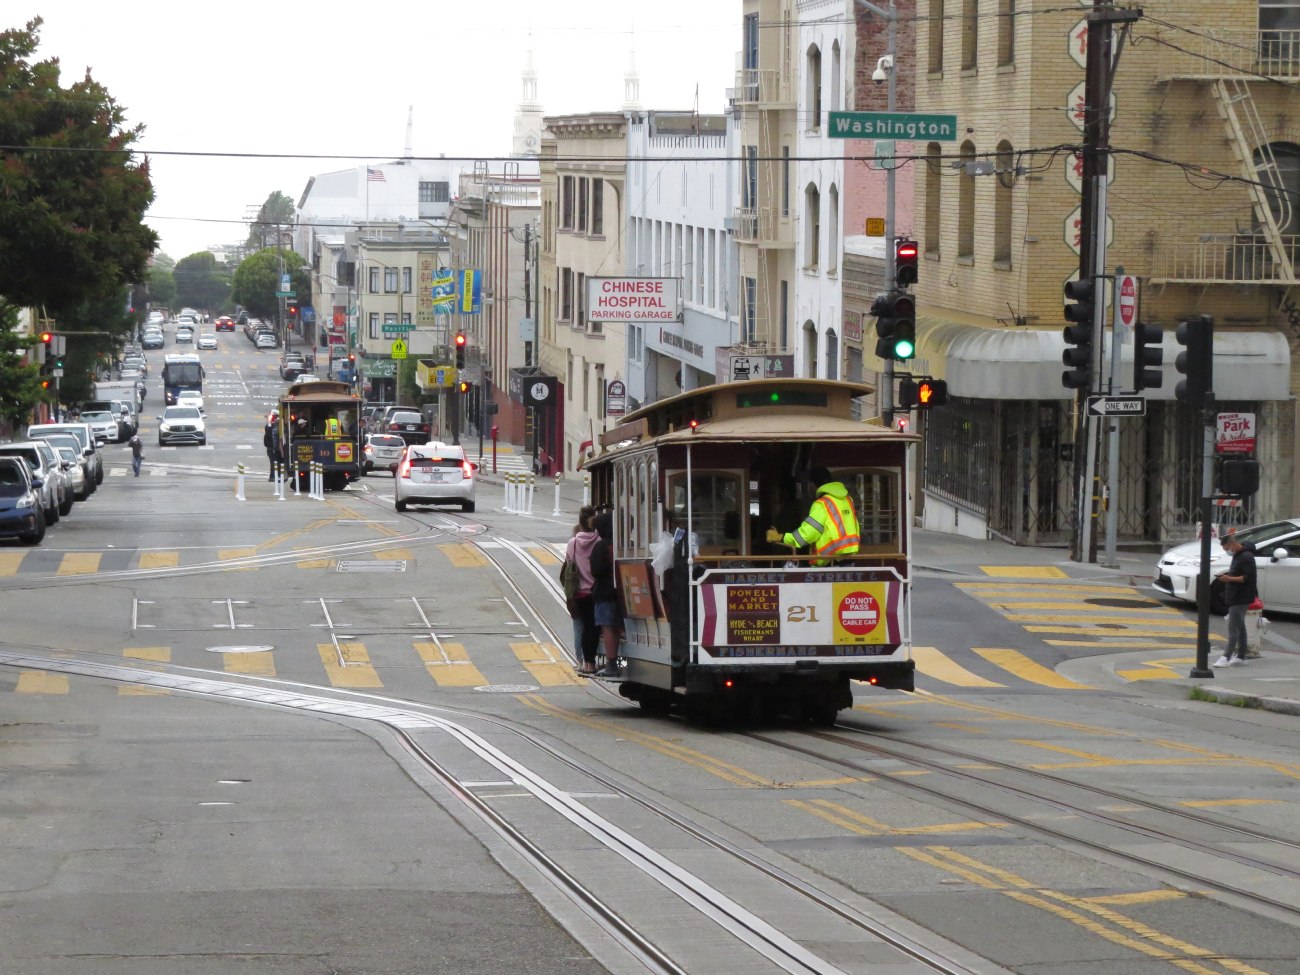 Сан-Франциско, область залива, Muni cable car № 21; Сан-Франциско, область залива — Линии и инфраструктура кабельного трамвая